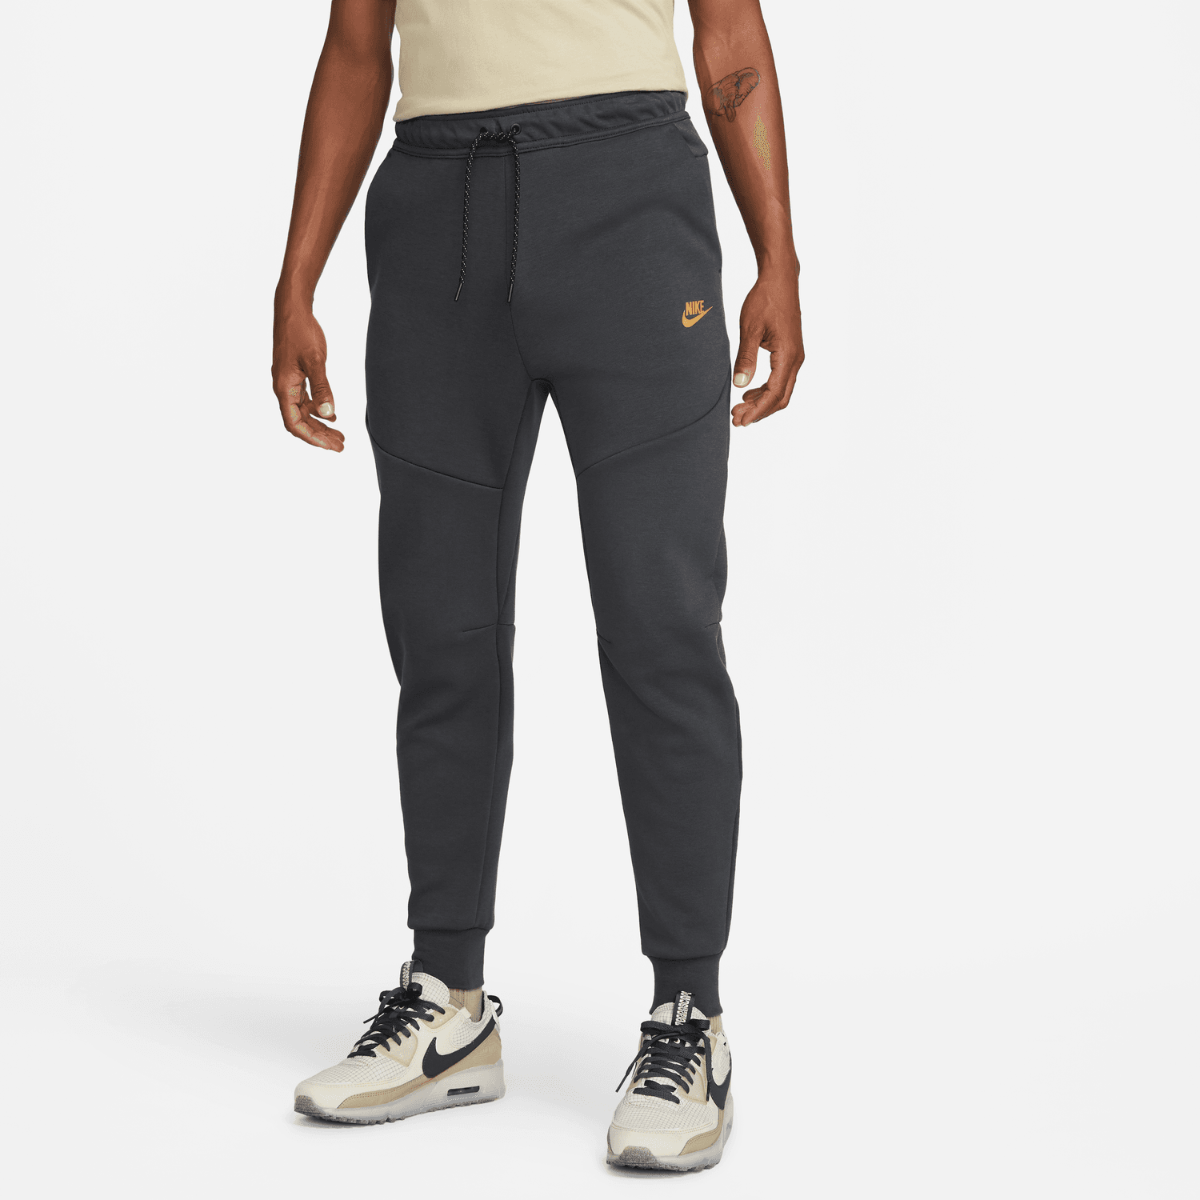 Nike Pantalons de Survêtement - Casquettes - Summer Edit